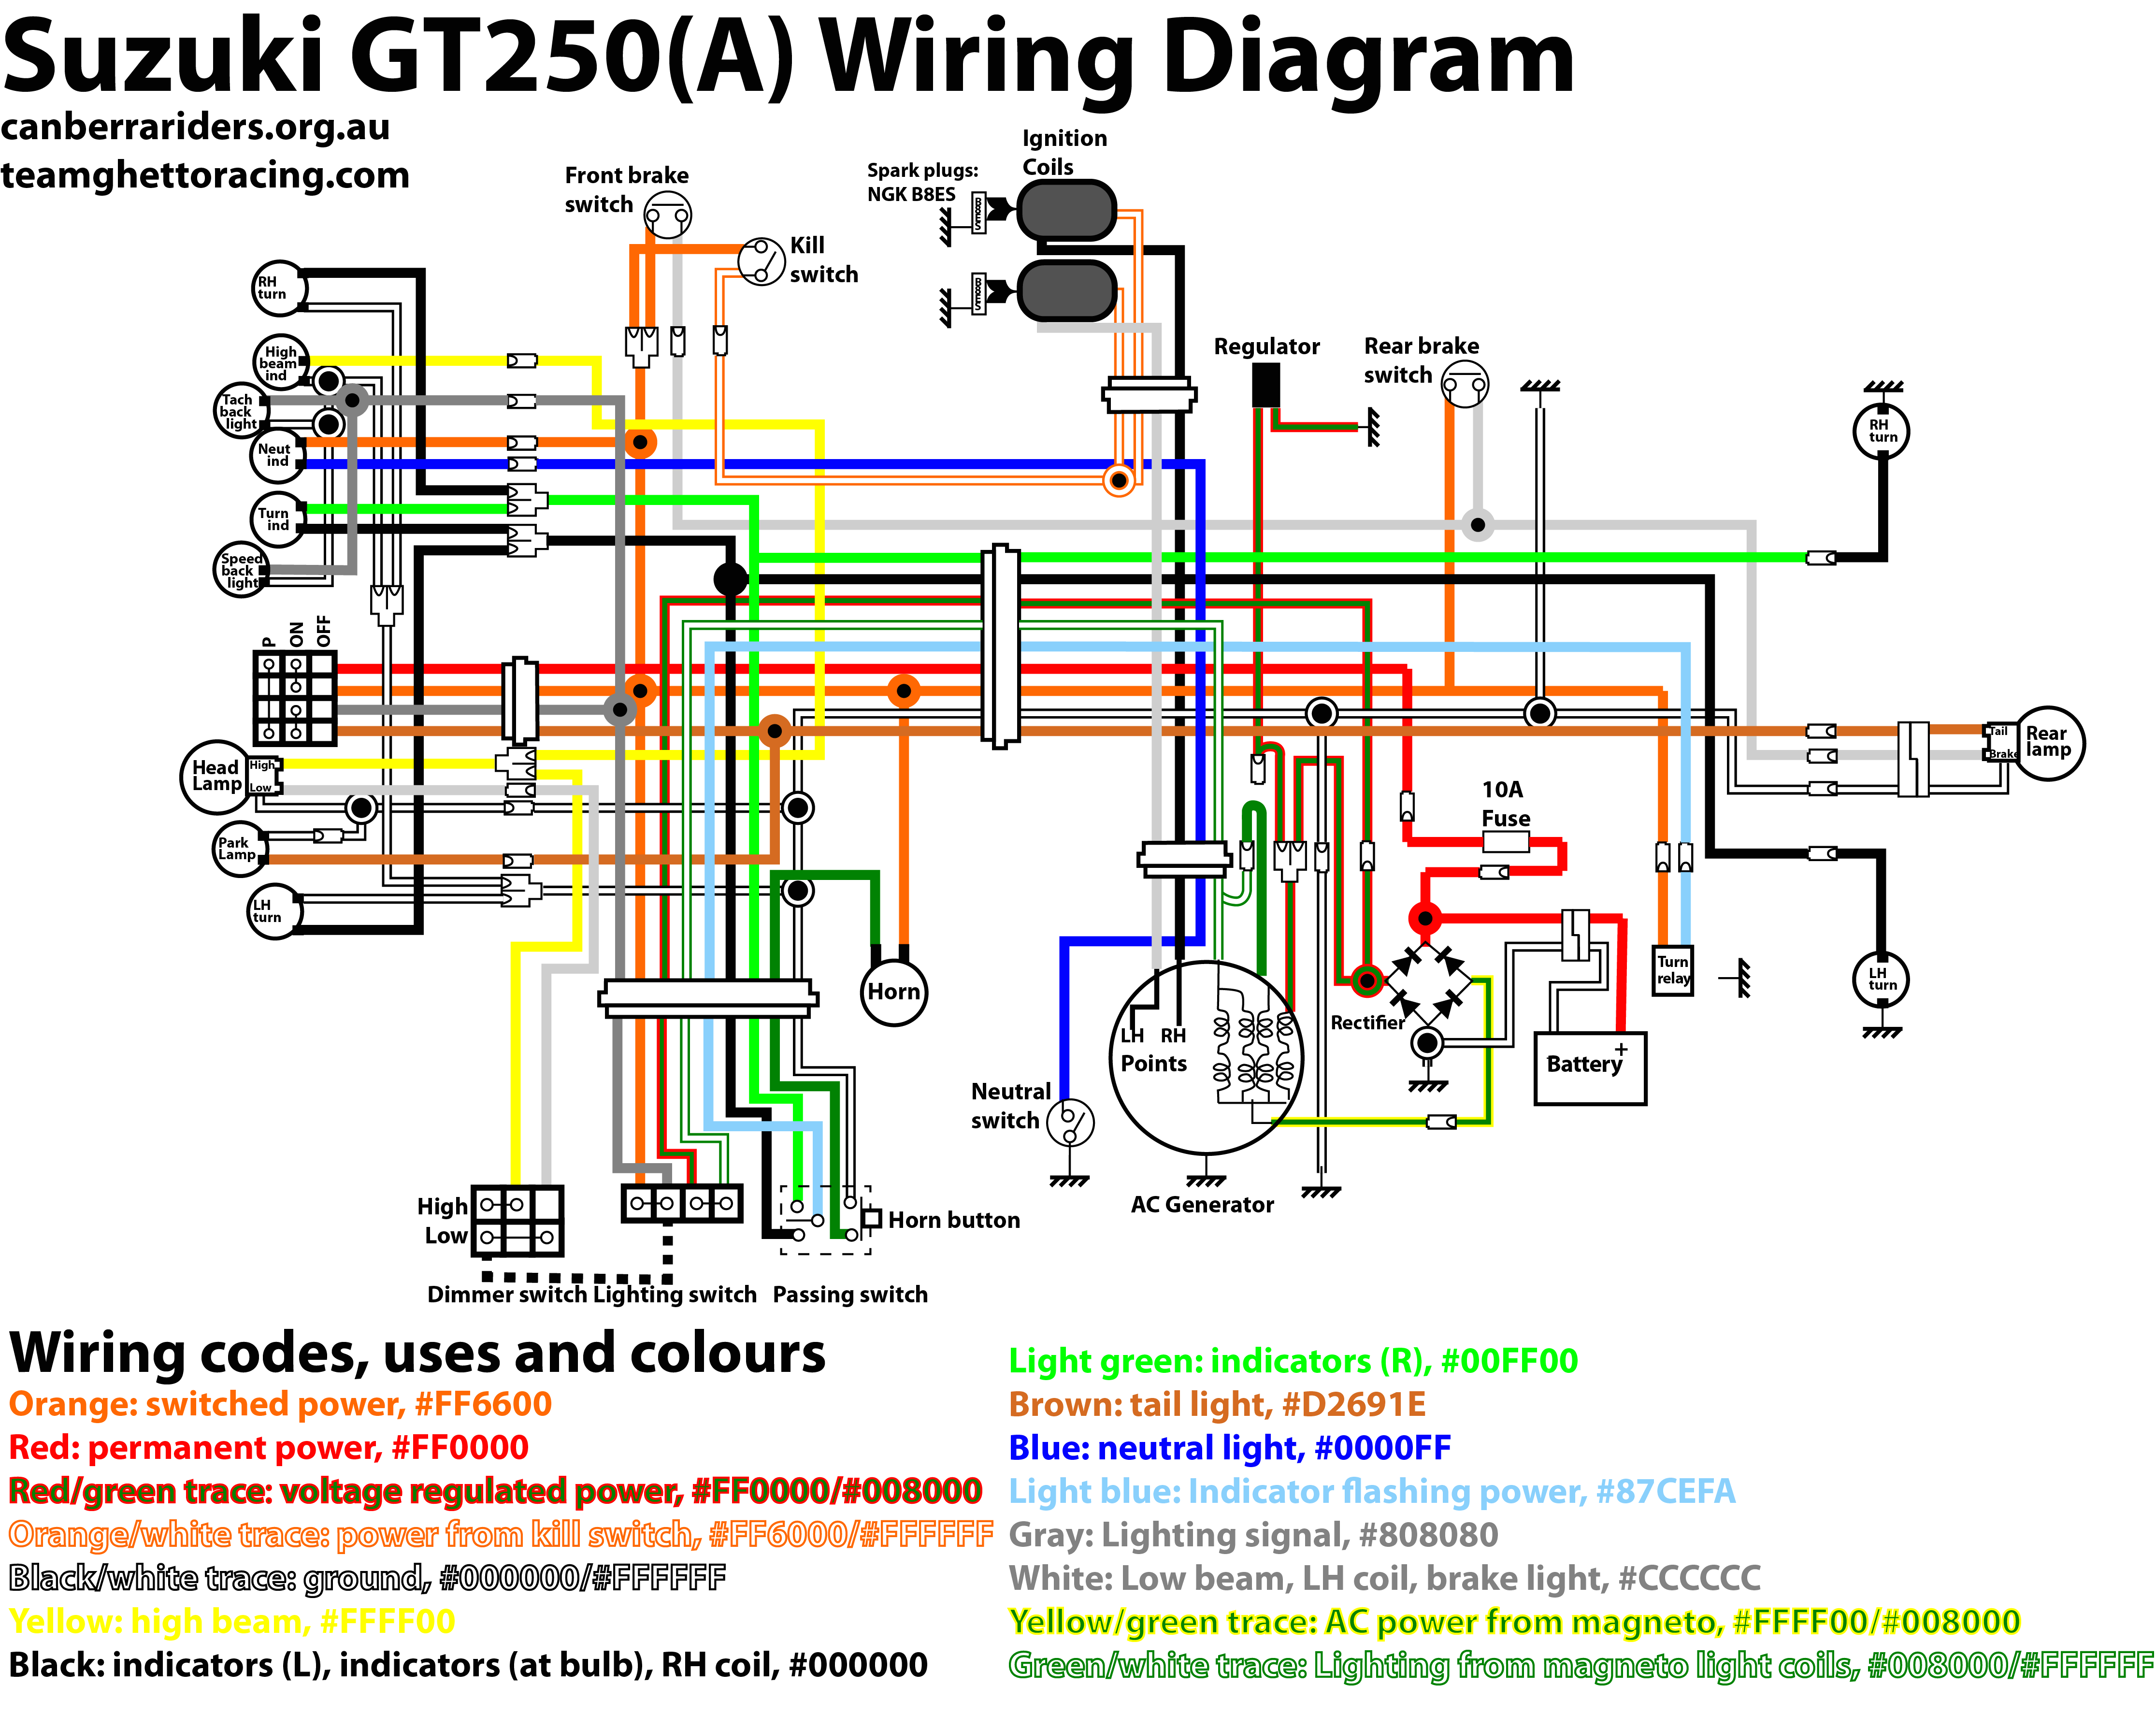 wiring diagram of suzuki multicab wiring diagram suzuki carry wiring diagram pdf suzuki multicab wiring diagram